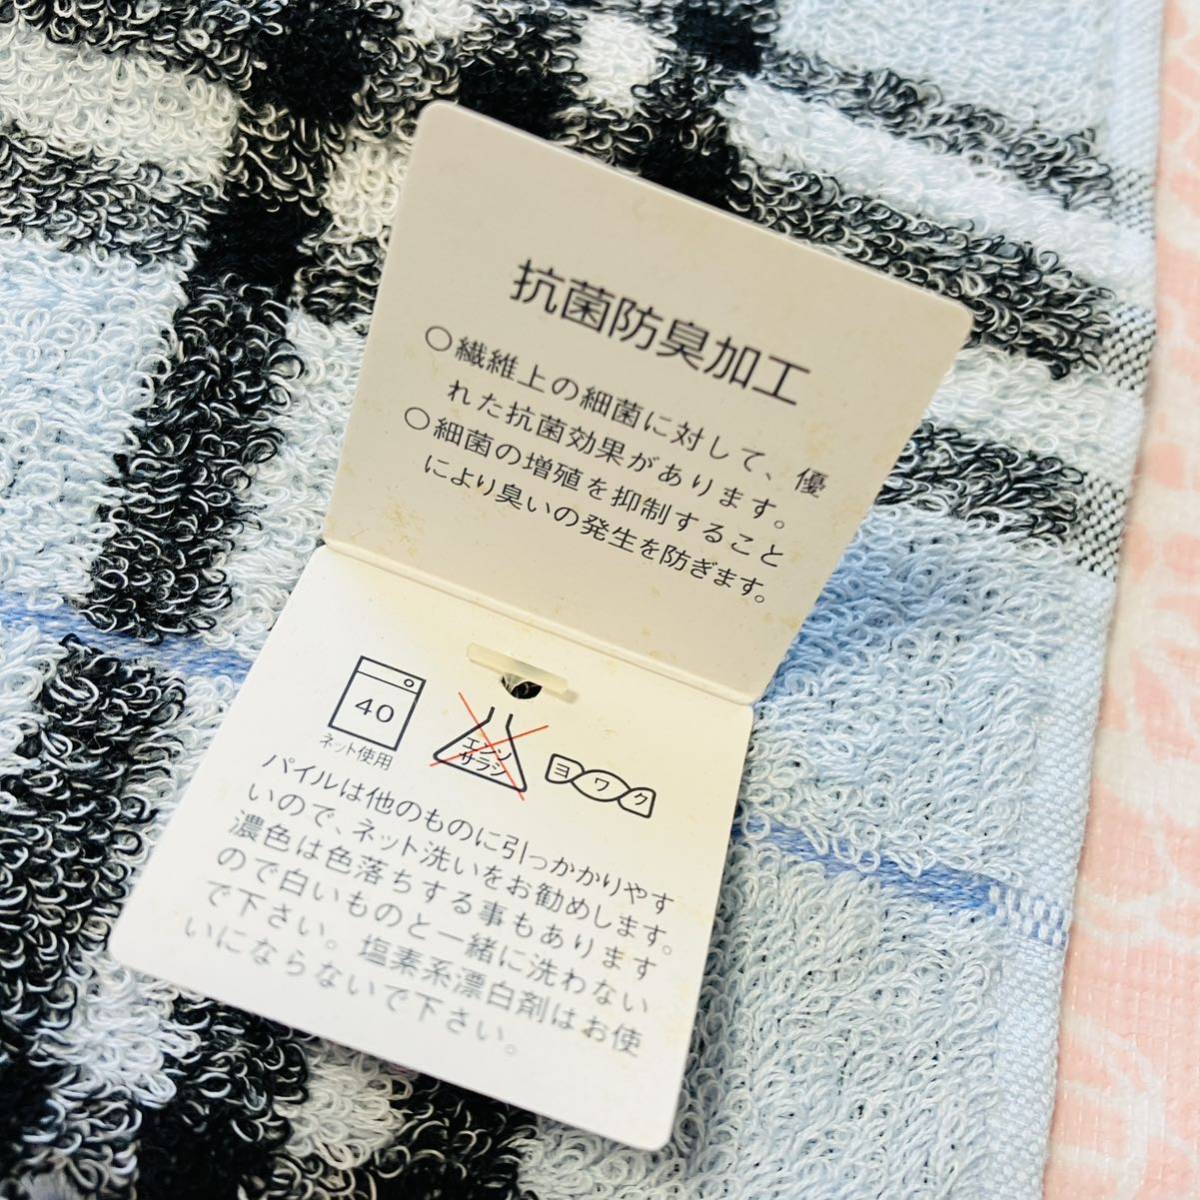 [ популярный рисунок ] новый товар /BURBERRY/ полотенце носовой платок / стандартный товар / Burberry / хлопок 100%/ не использовался / быстрое решение есть / анонимность отправка /noba проверка / полотенце для рук / сделано в Японии / бледно-голубой 